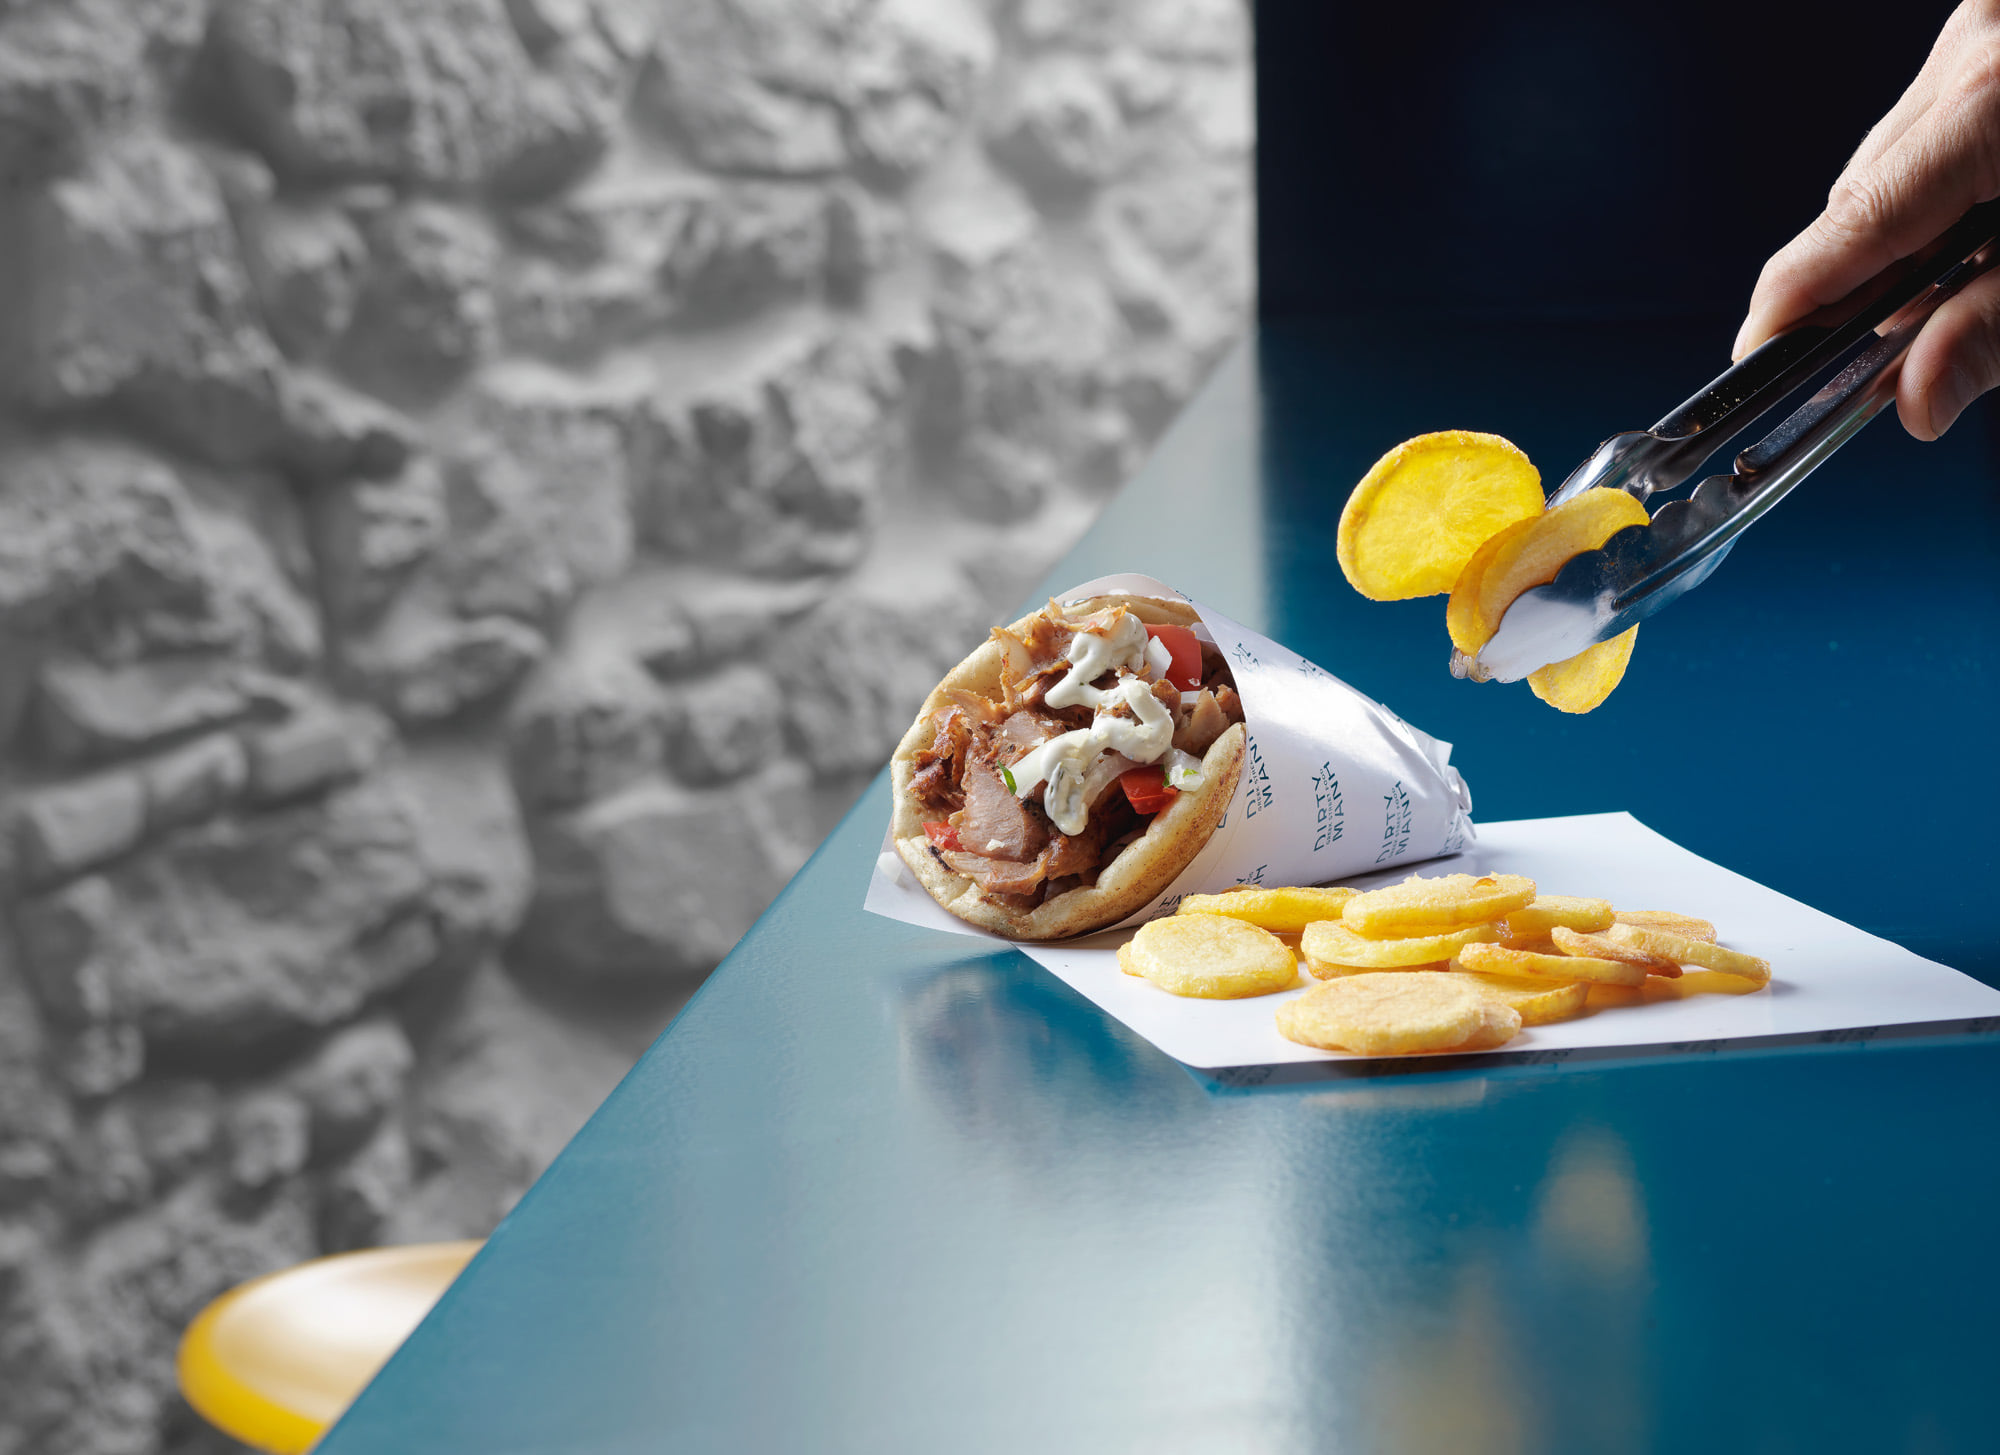 Πατάτες στο χέρι, γύρος-όνειρο: Το σουβλατζίδικο με τις αυθεντικές γεύσεις που θα λατρέψεις απ' την πρώτη μπουκιά (Pics)